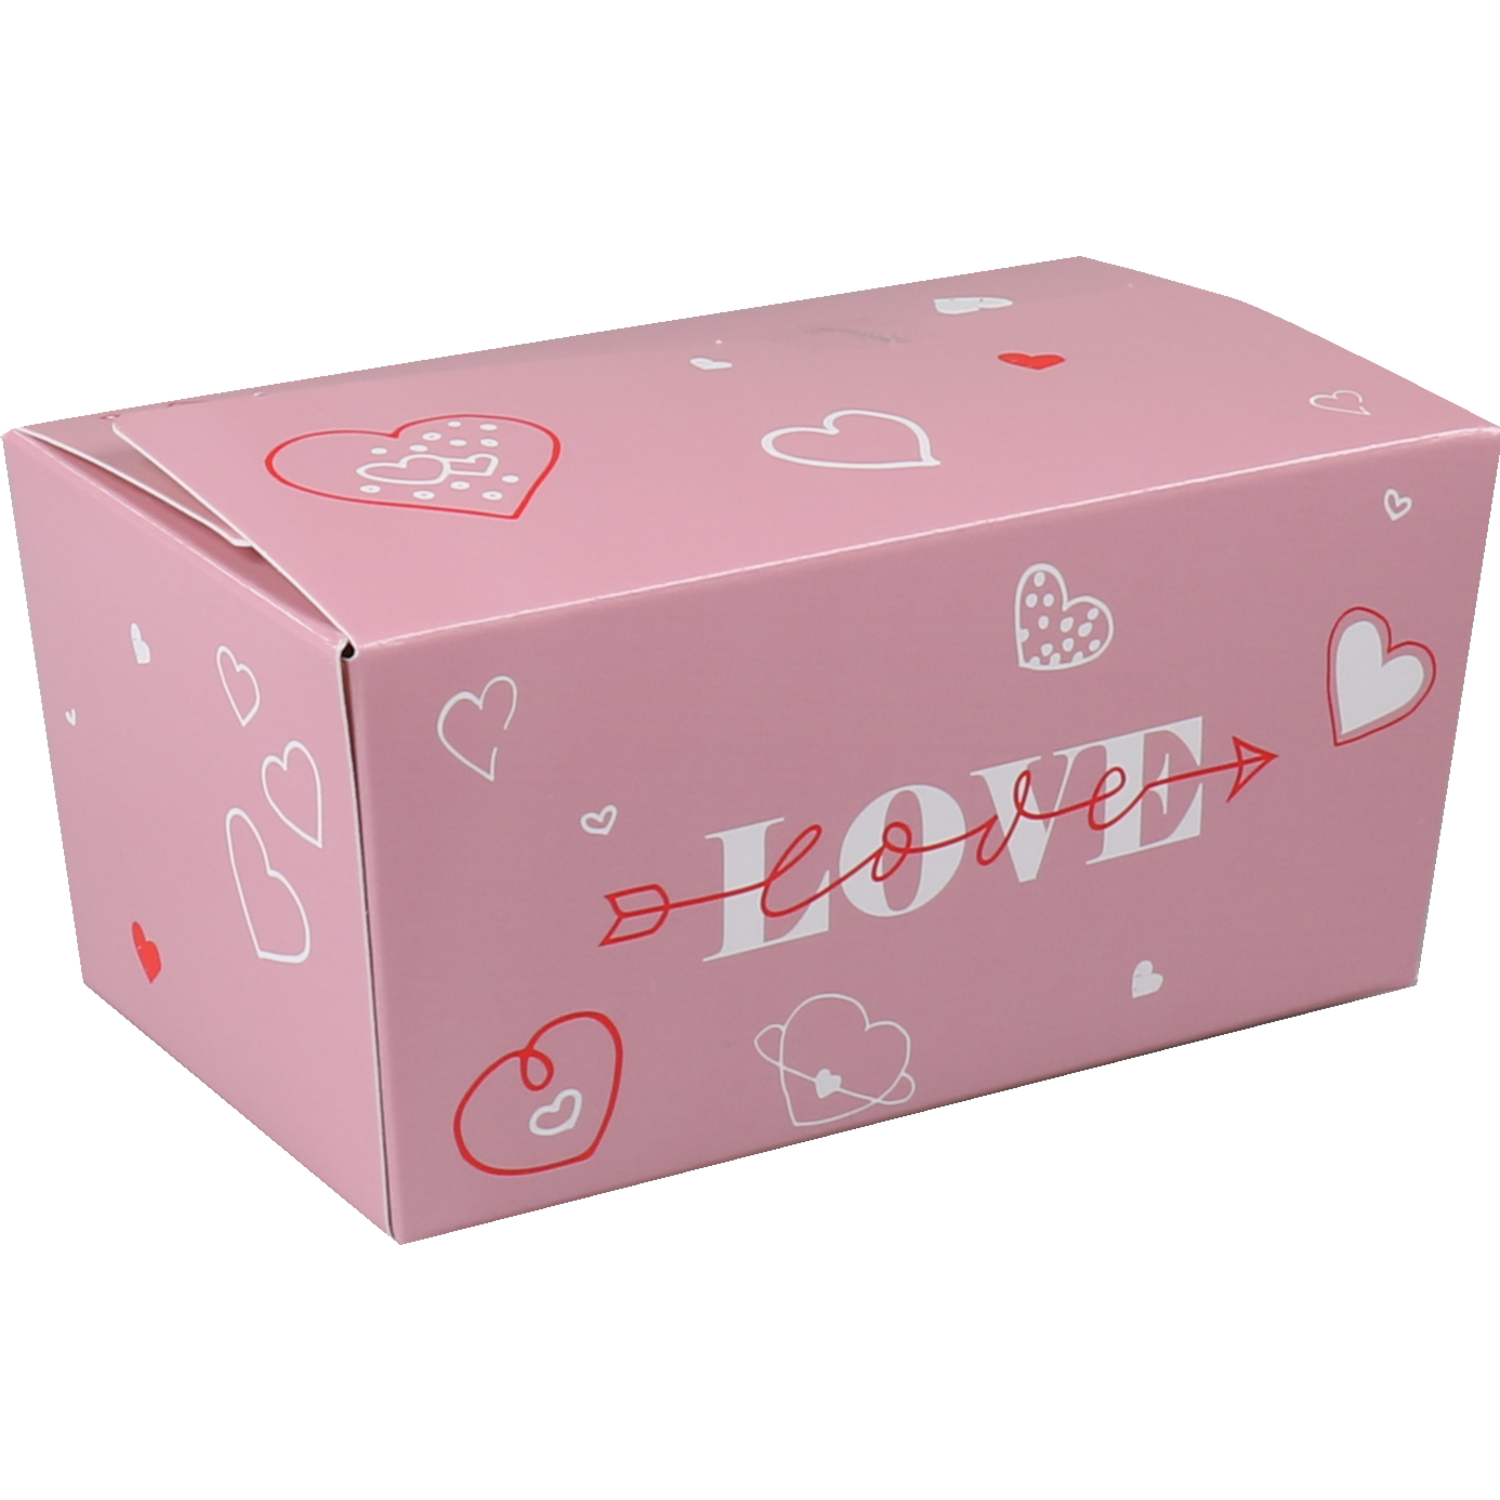 Ballotin, Love and hearts, karton + PP, 375gr, lila 1